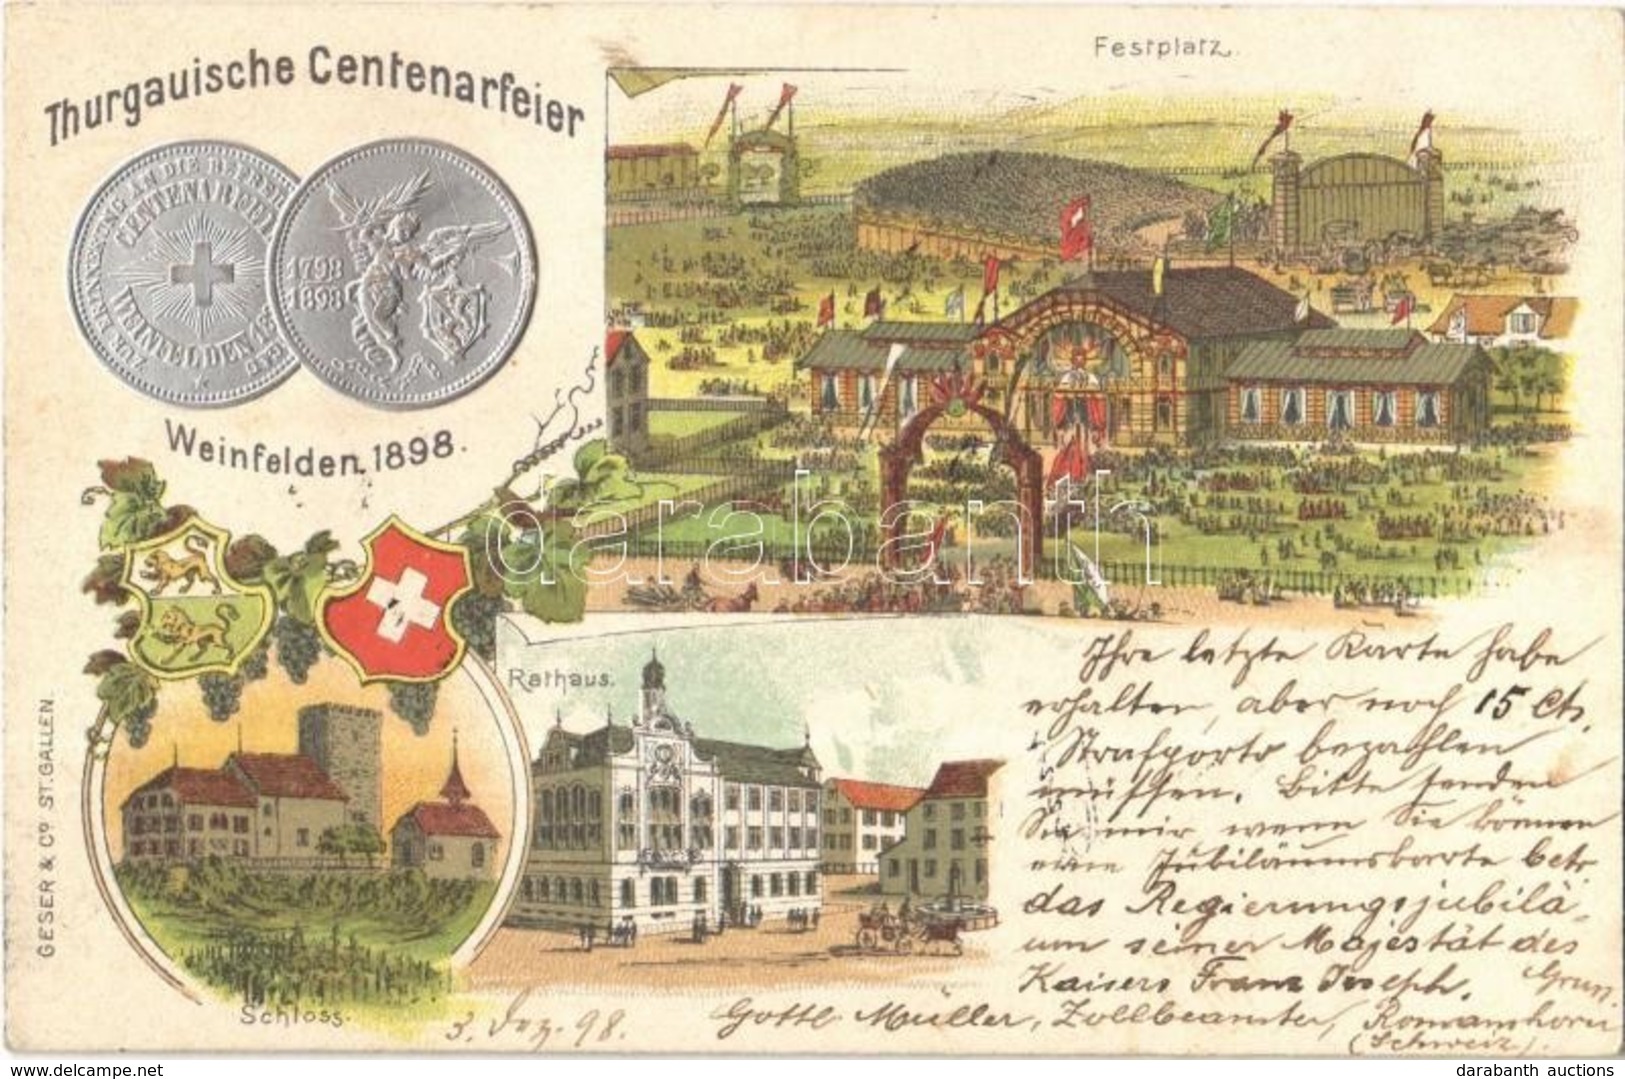 T2/T3 1898 Weinfelden, Thurgauische Centenarfeier, Festplatz, Rathaus, Schloss / Thurgau Centenary Celebration, Festival - Ohne Zuordnung